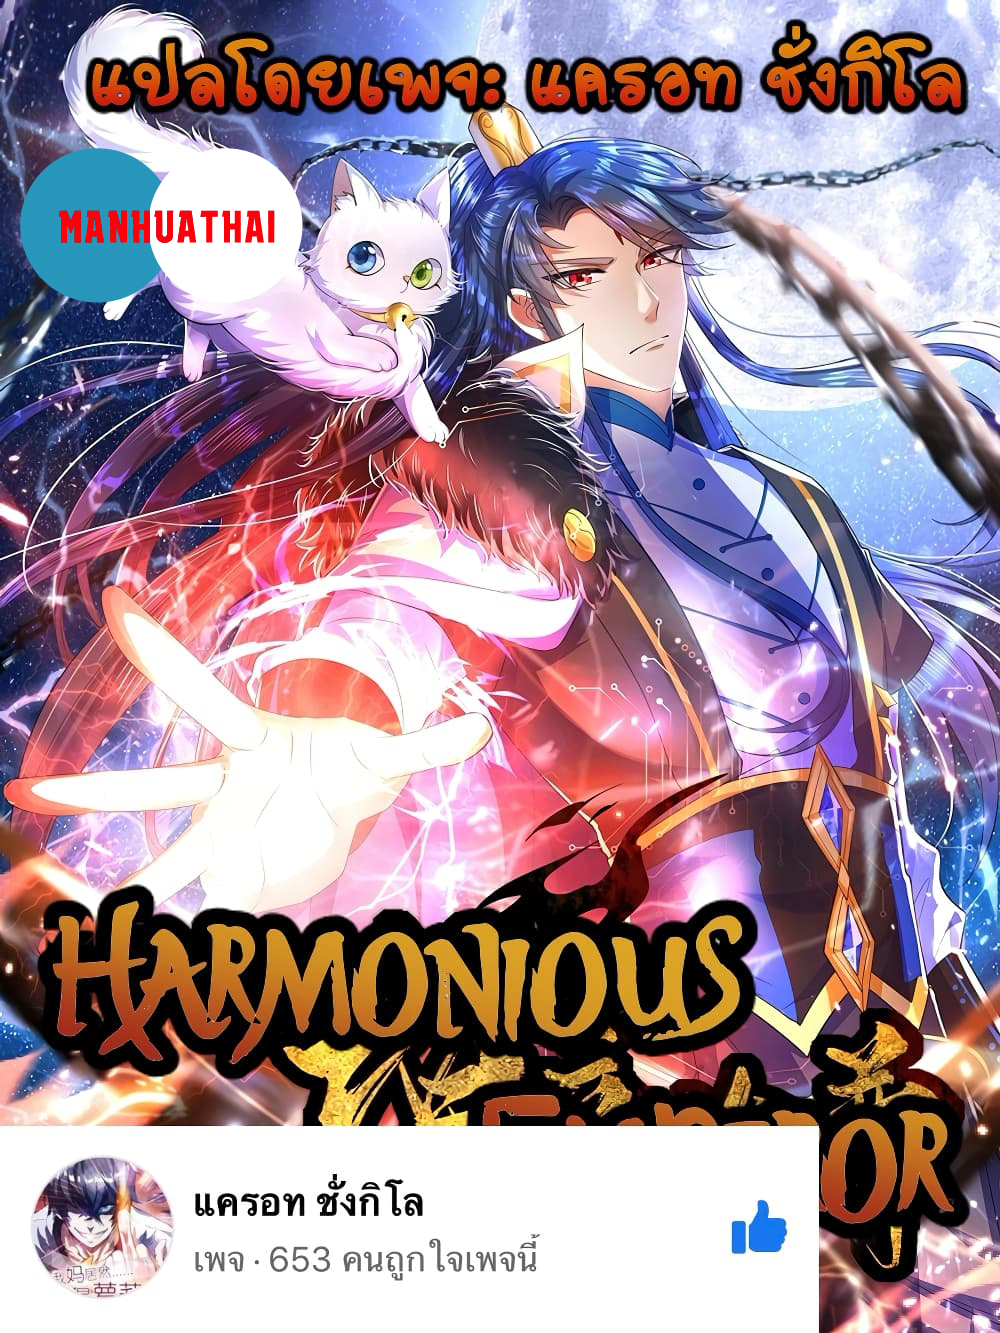 Harmonious Emperor is respected 81 (1)